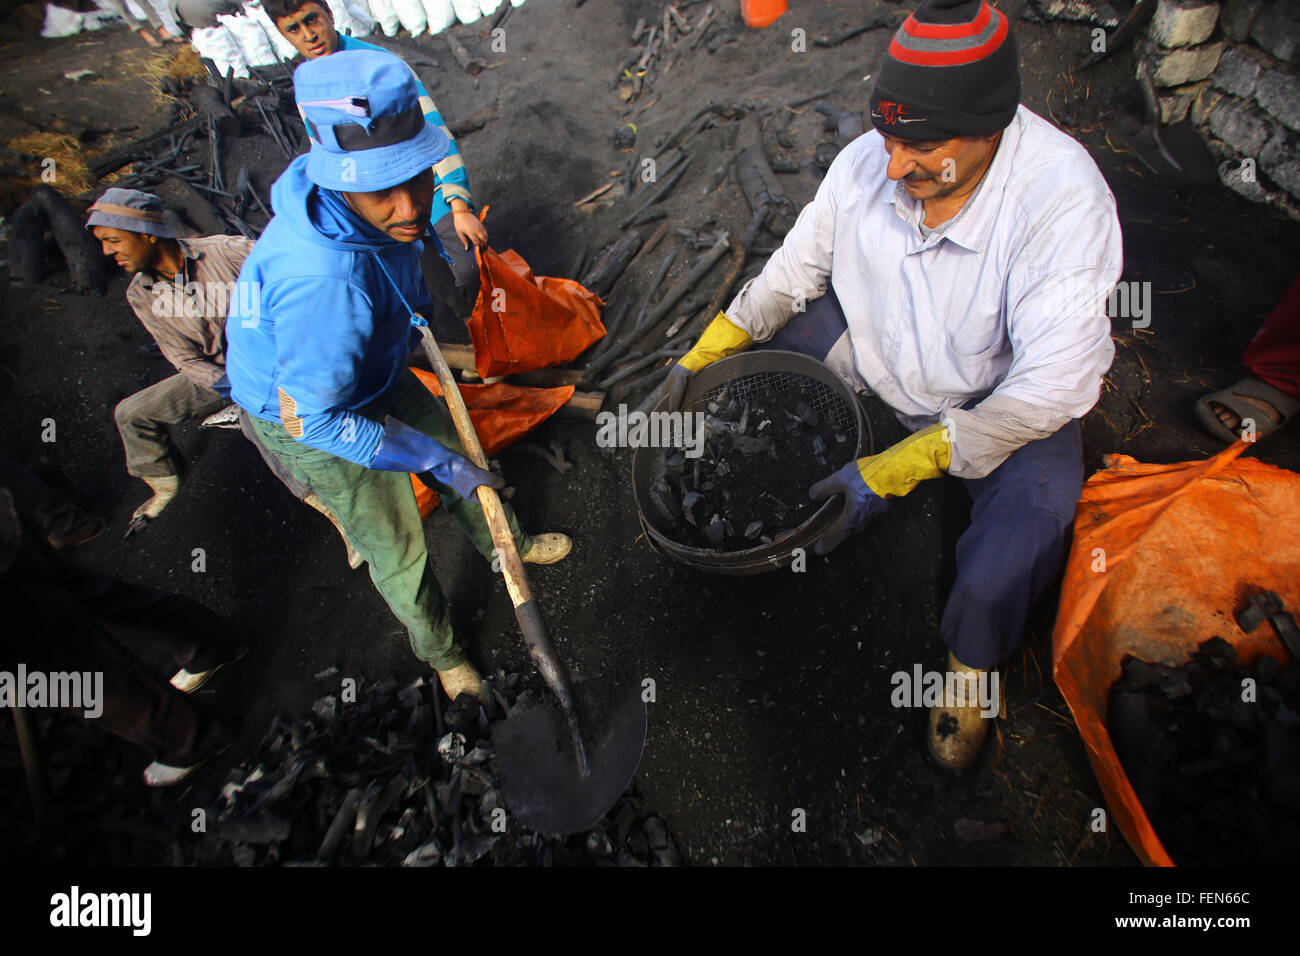 Le Caire. 7 Février, 2016. Les travailleurs égyptiens le charbon de travailler dans une usine de charbon, l'Égypte, Sharqia sur 7 Février, 2016. Il y avait 300 usines de charbon en Egypte avec plus de 5 000 travailleurs employés. Mais le gouvernement égyptien est maintenant beaucoup d'entre eux pour réduire la pollution environnementale causée par les unités industrielles de charbon. © Ahmed Gomaa/Xinhua/Alamy Live News Banque D'Images